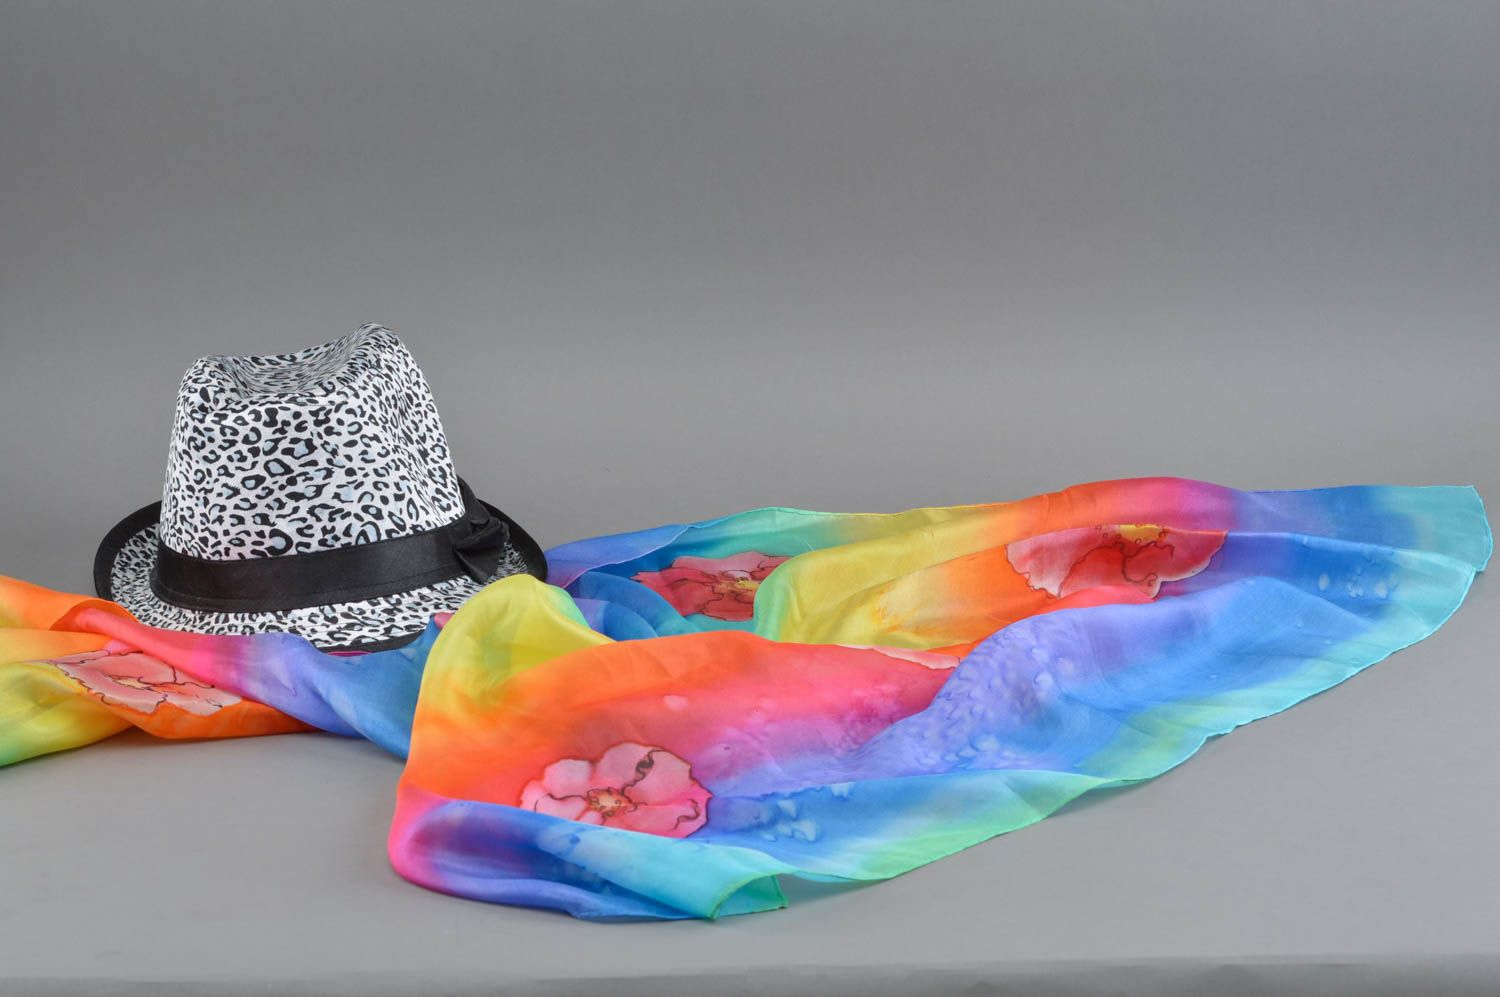 Шаль в технике горячего батика шелковая разноцветная ручной работы Радуга фото 1